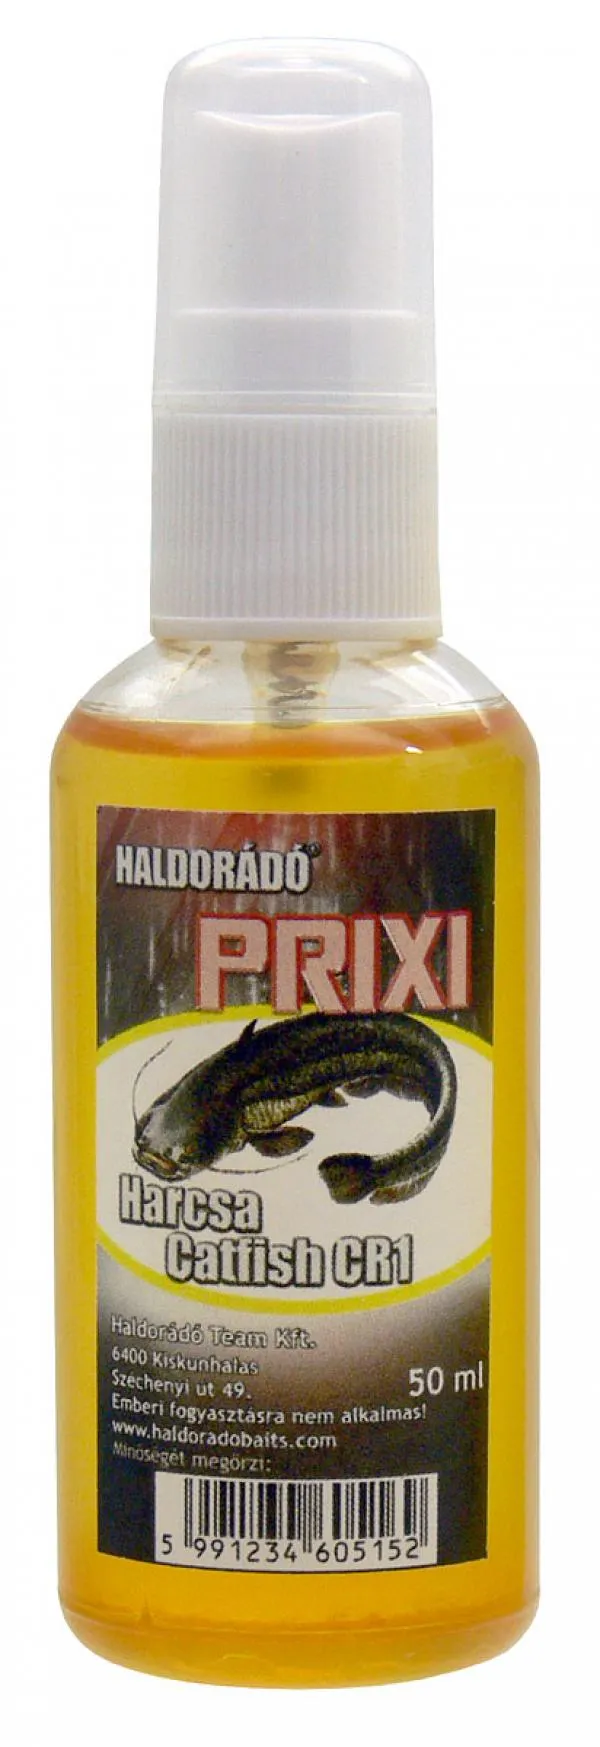 Haldorádó PRIXI ragadozó aroma spray - Harcsa/Catfish CR1...